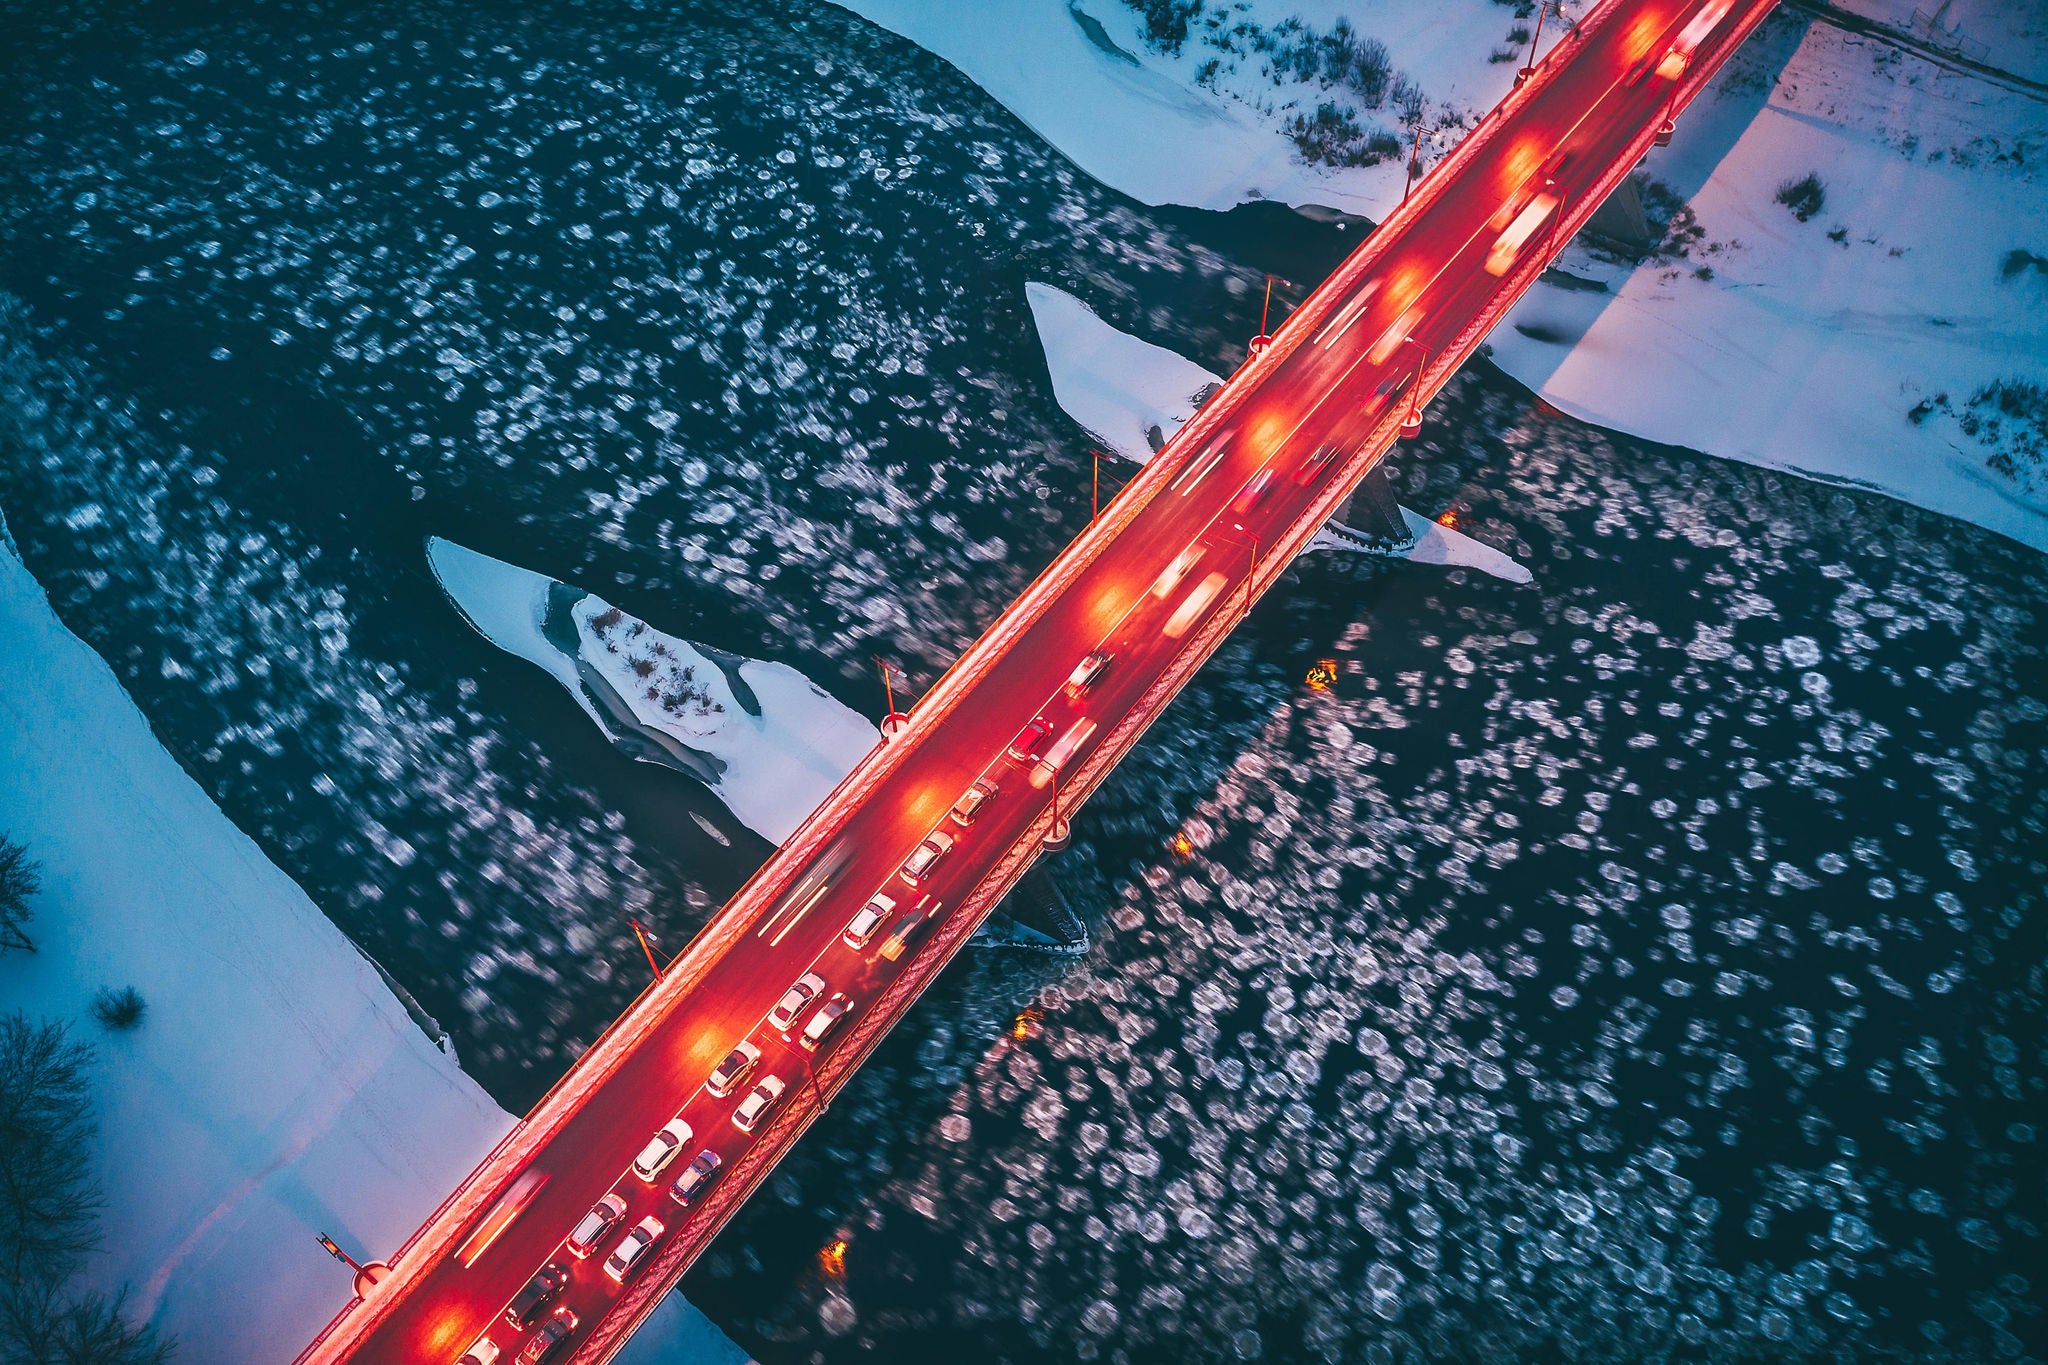 headlights bridge frozen river